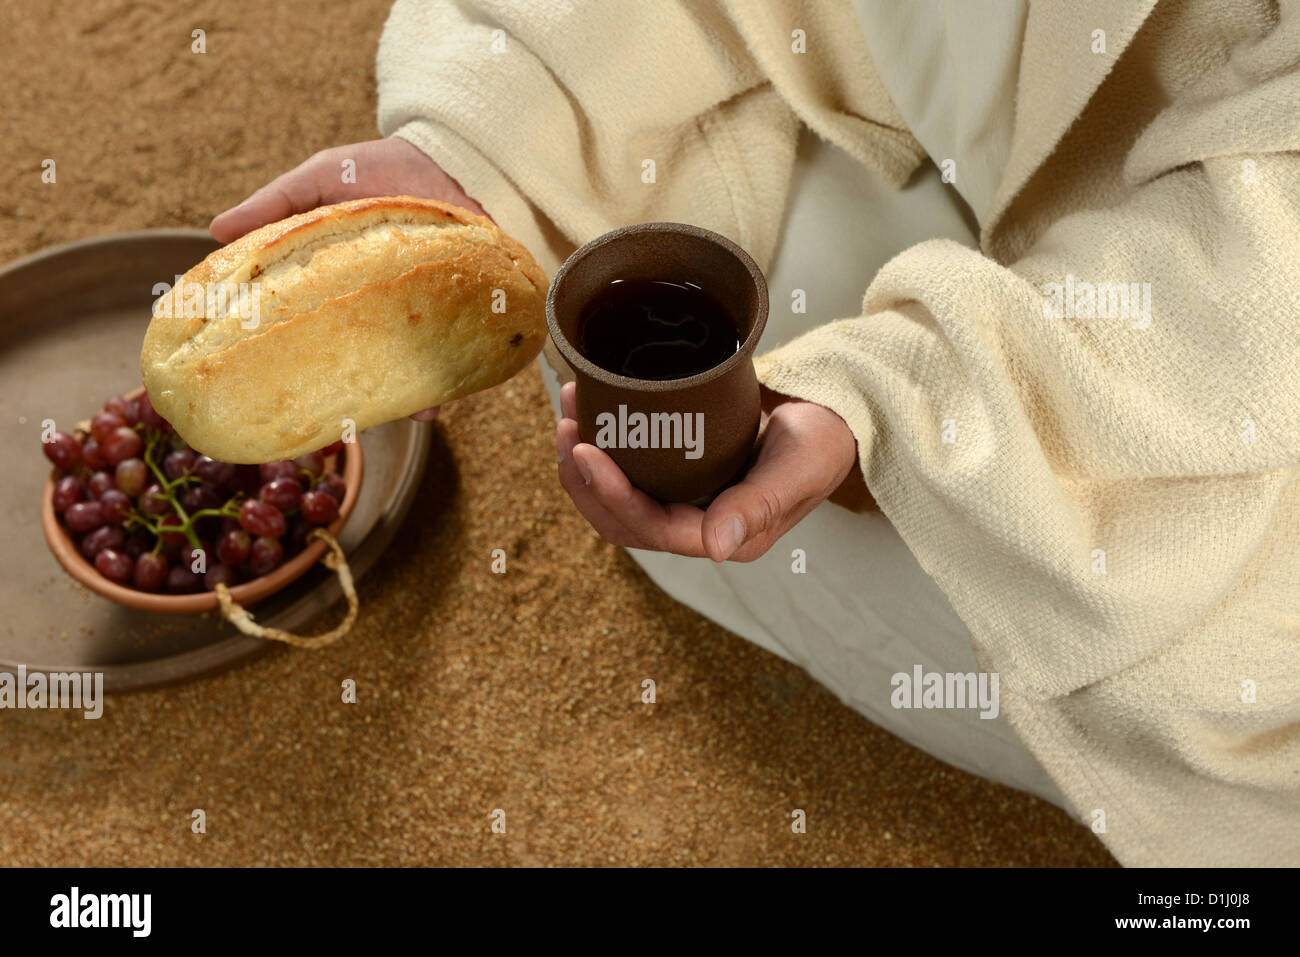 Jésus mains tenant le pain et le vin avec le bac de raisins en arrière-plan Banque D'Images